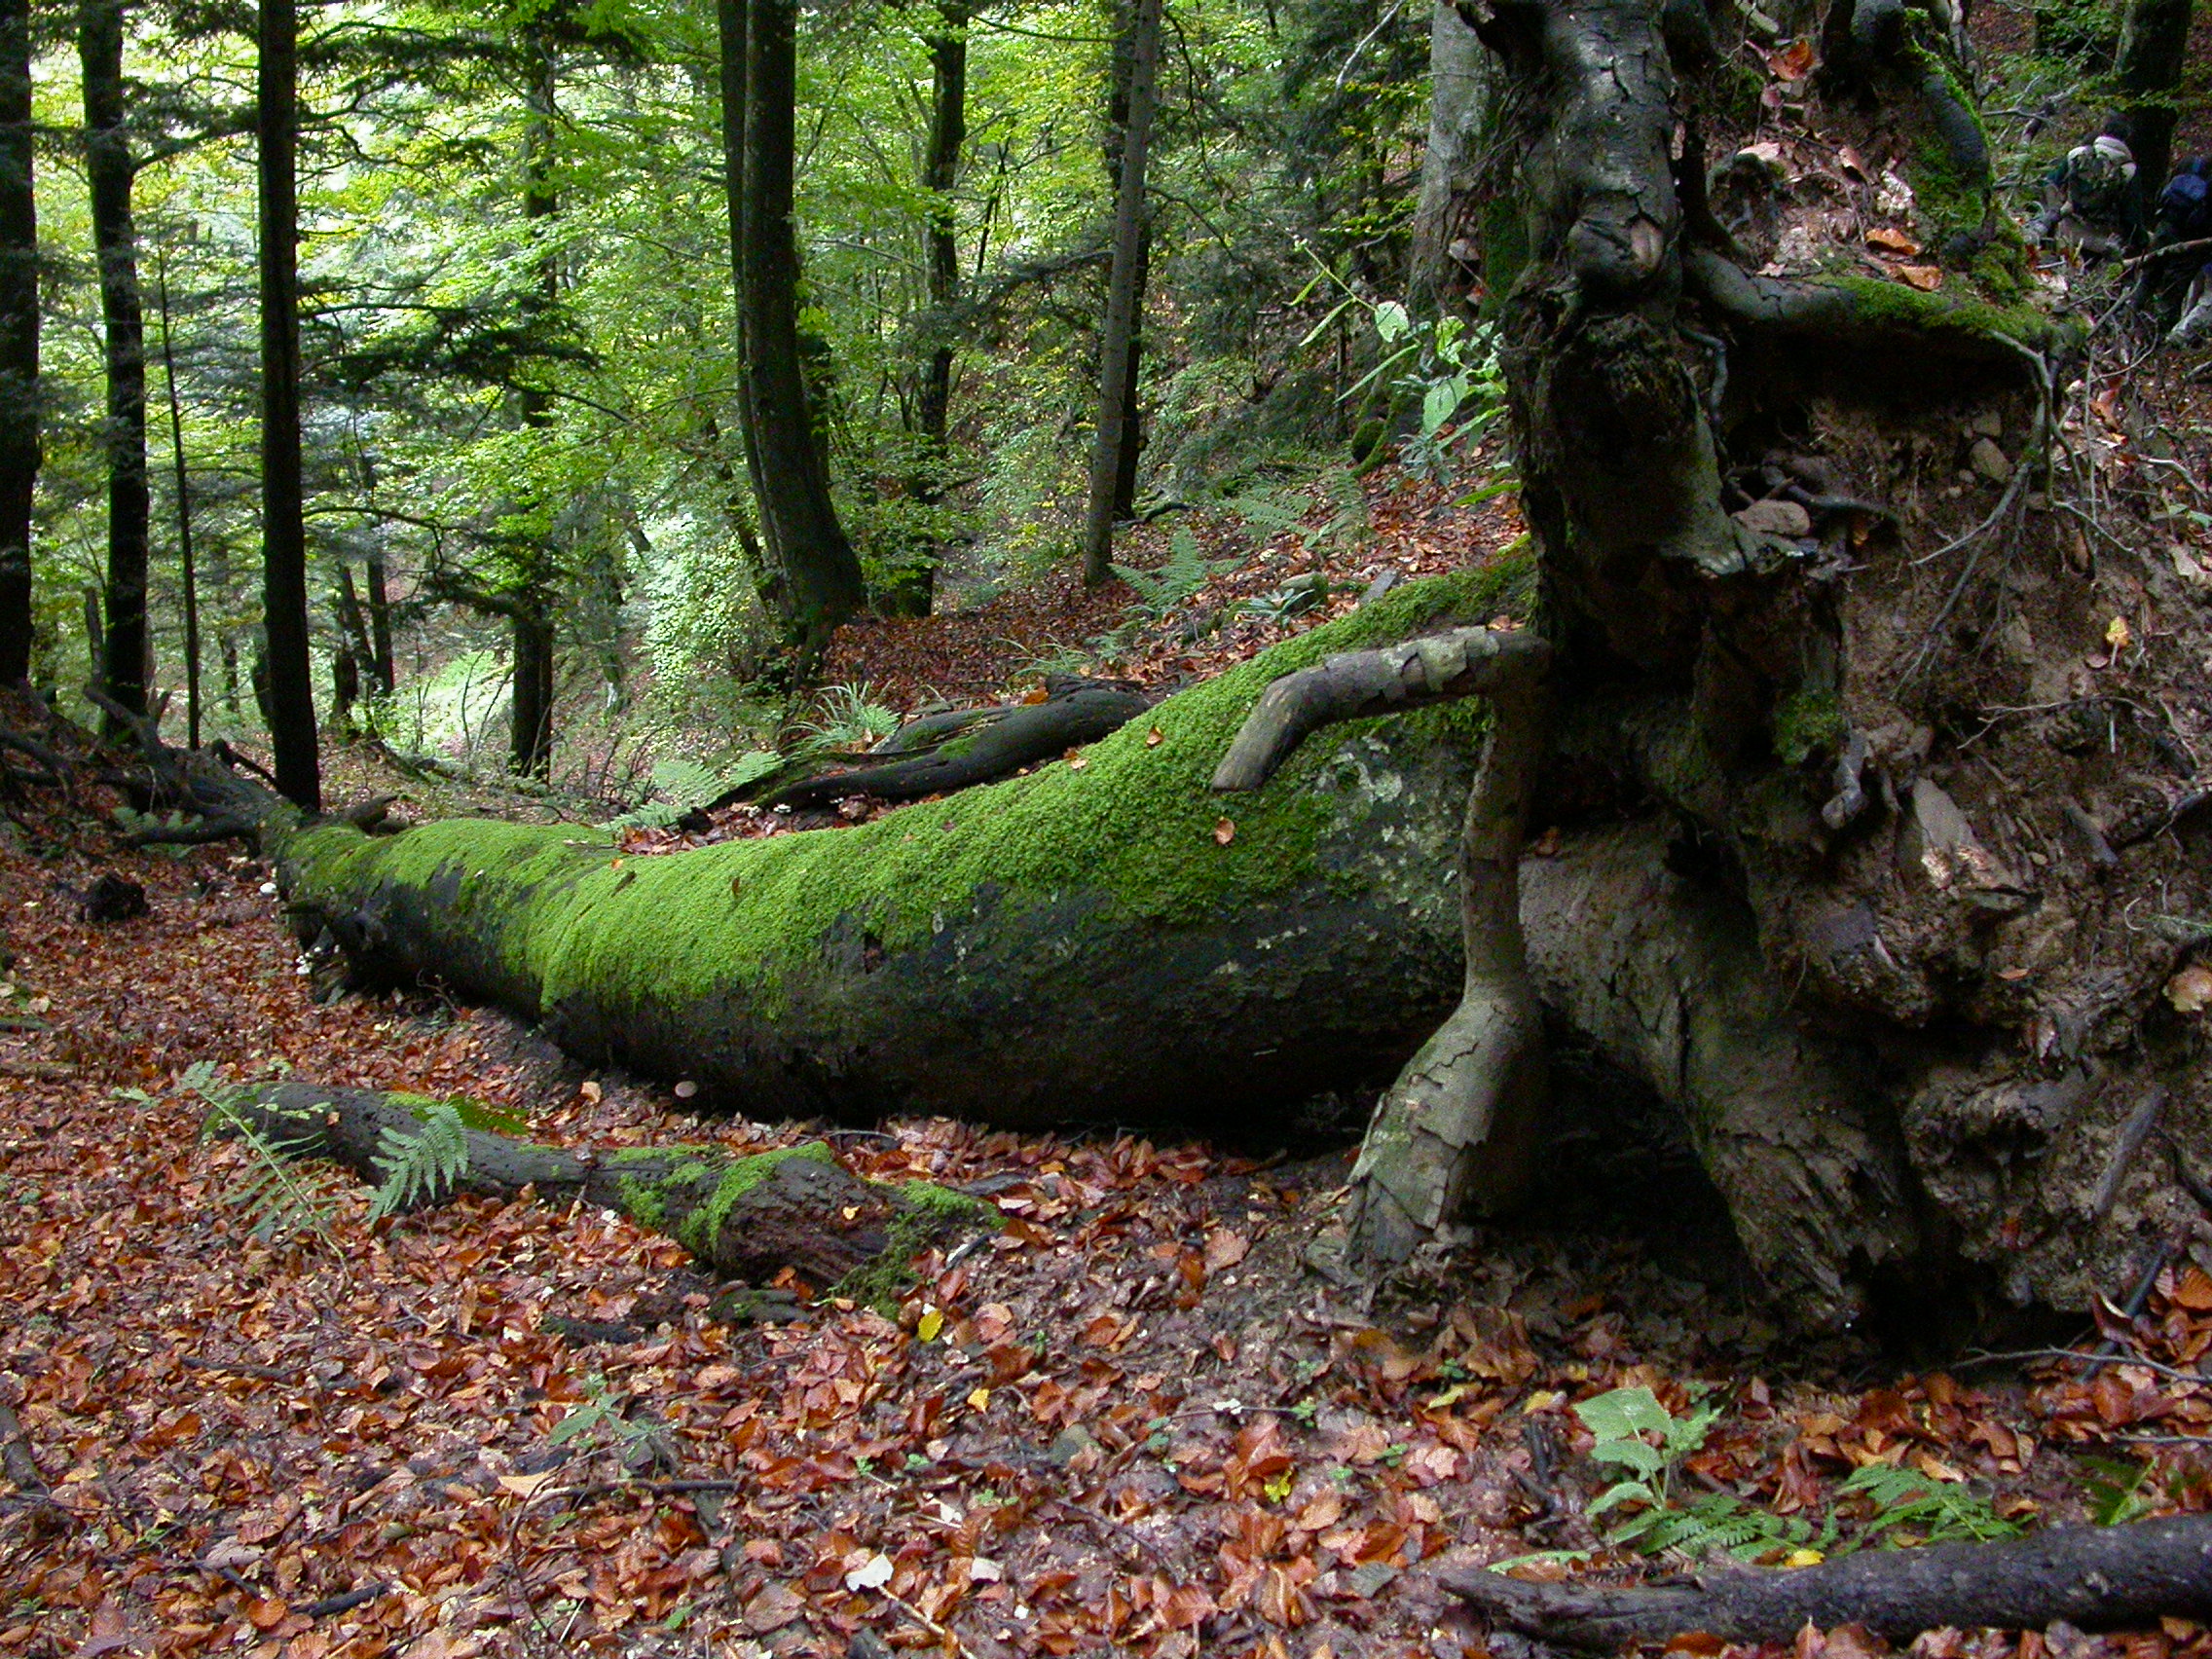 La foresta ha bisogno della gestione dell’uomo? Il caso delle Foreste casentinesi